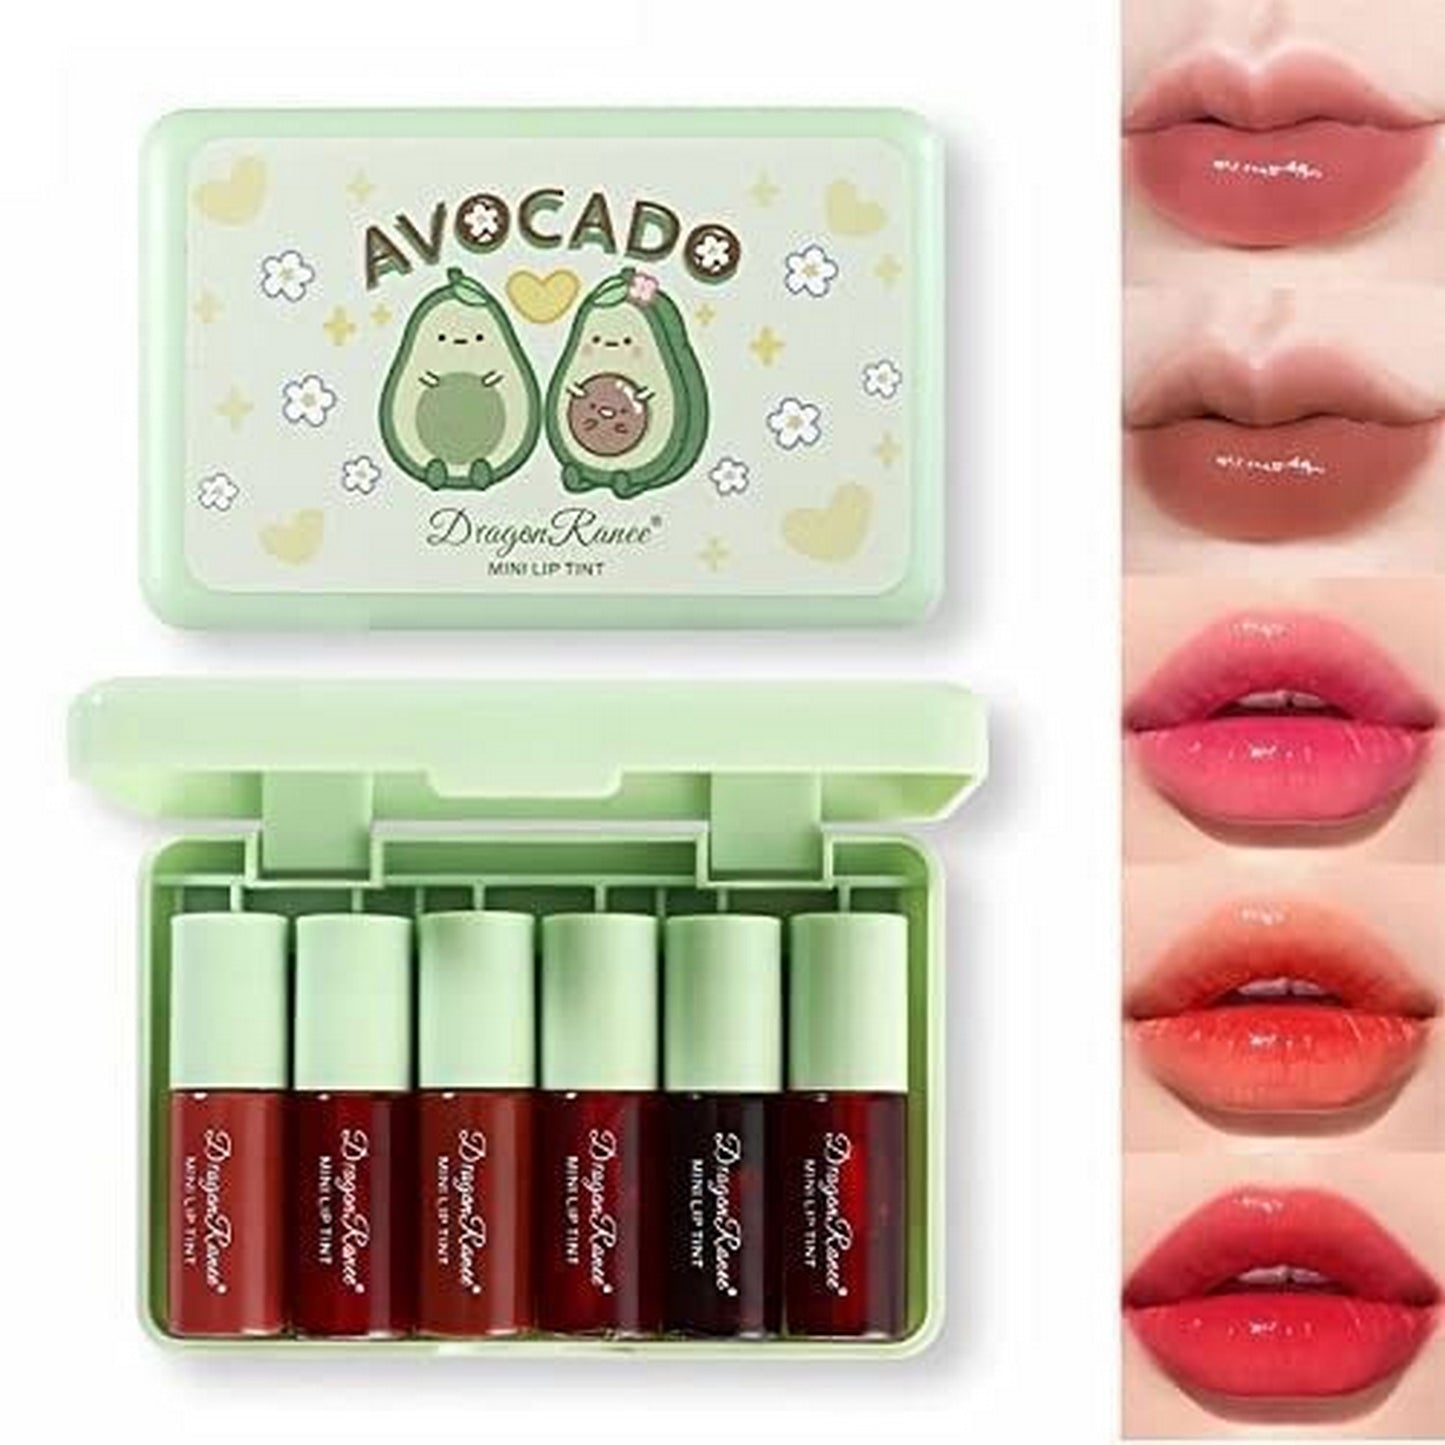 Dragon Ranee Avocado Lipstick Natural Lip And Cheek Tint Makeup 6pcs - FlyingCart.pk